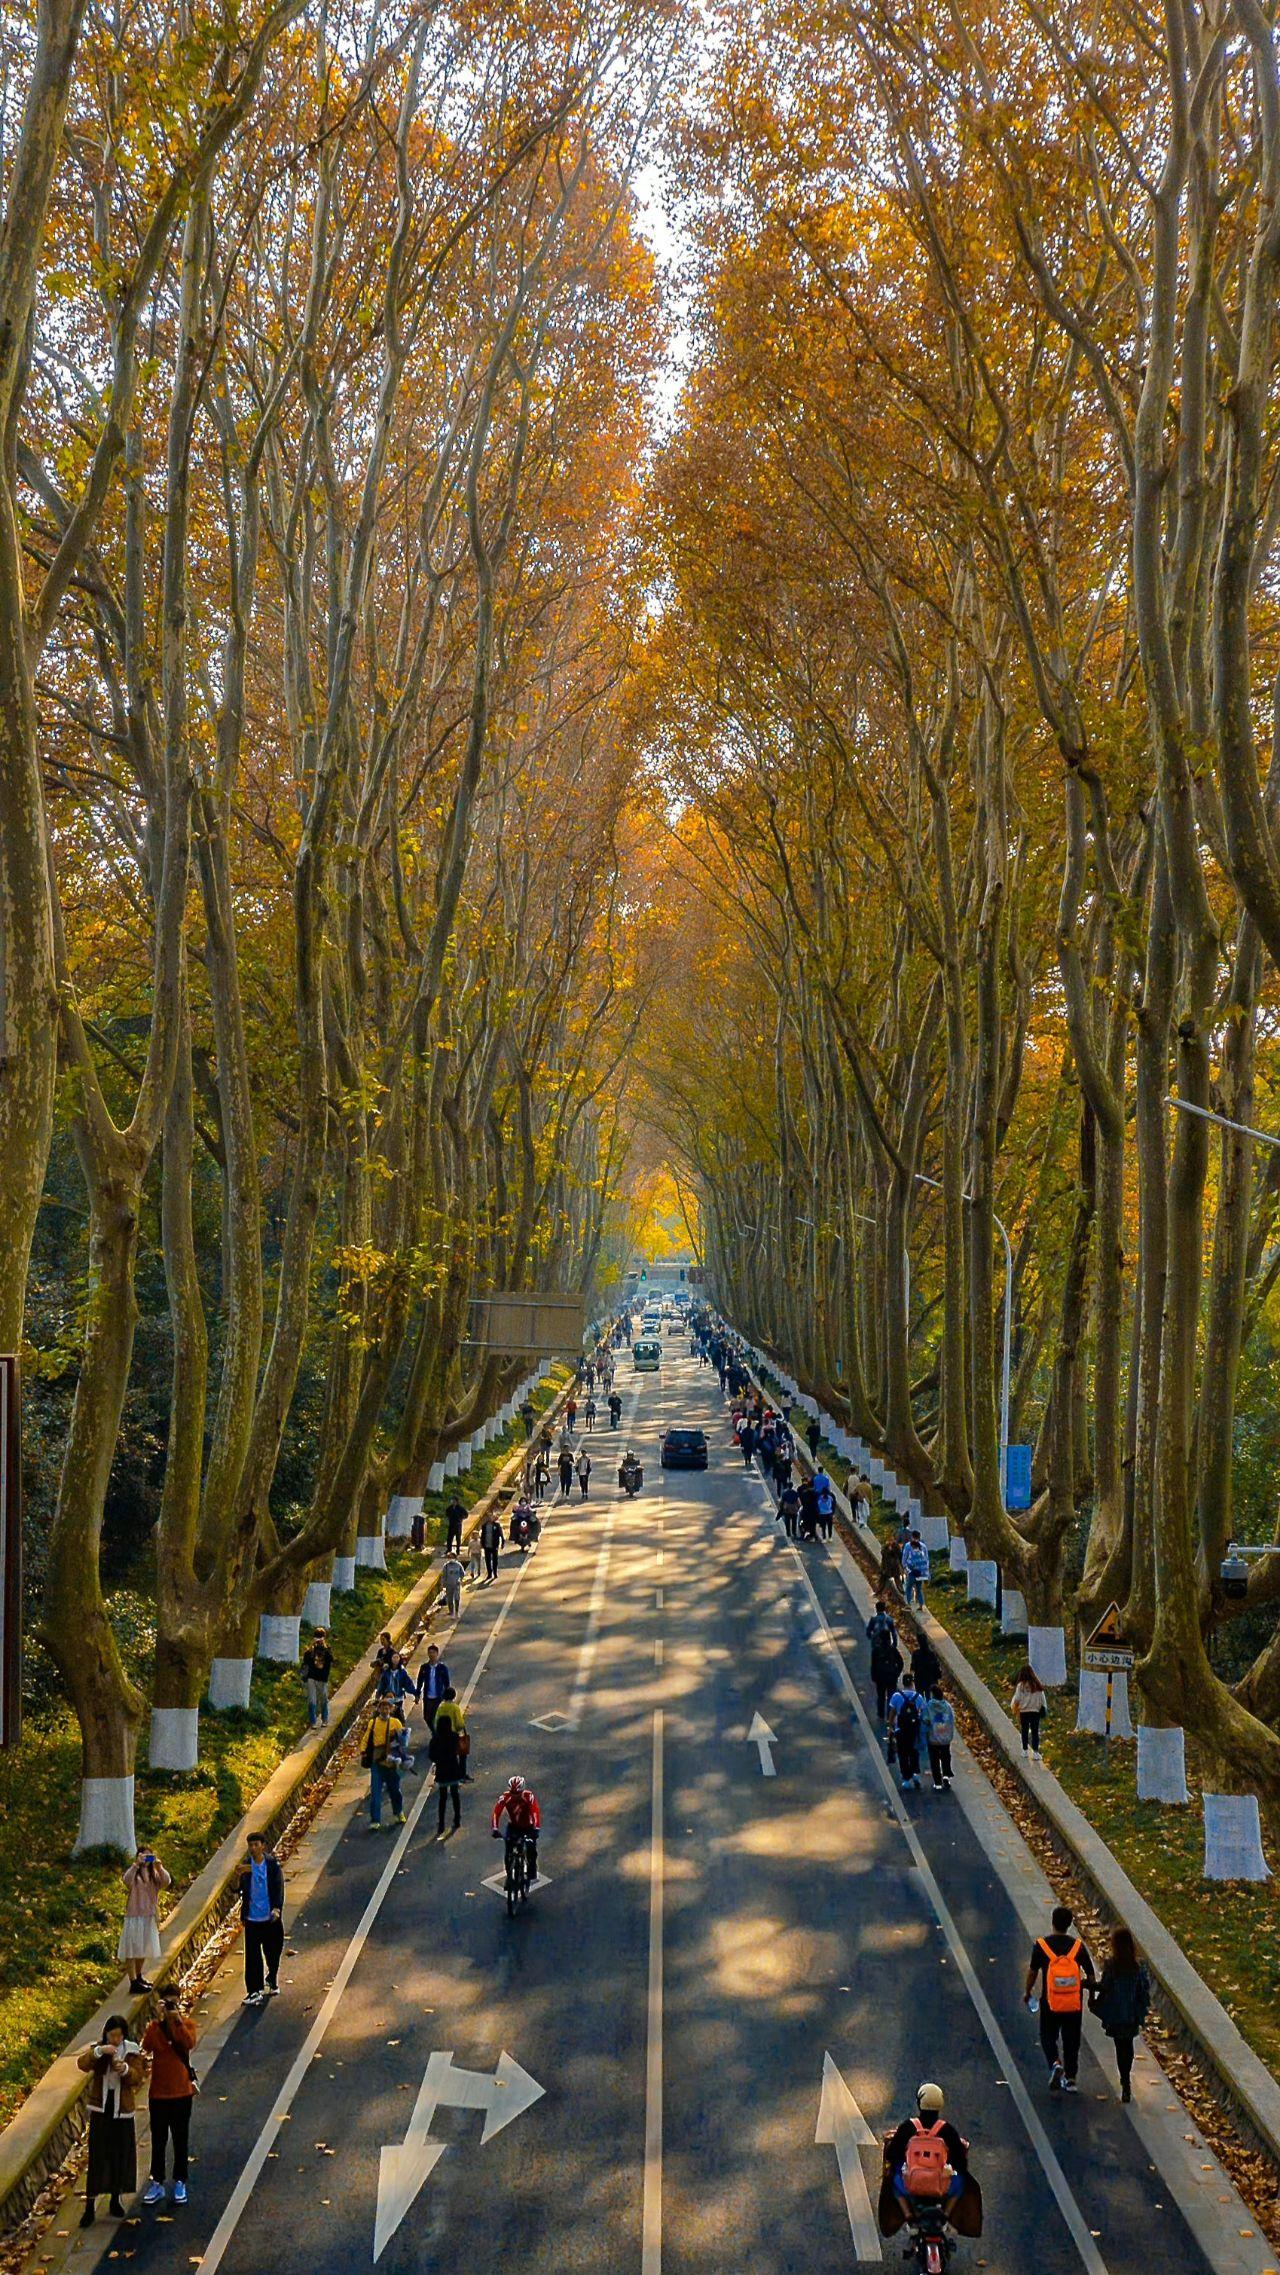 南京梧桐树图片街景图片